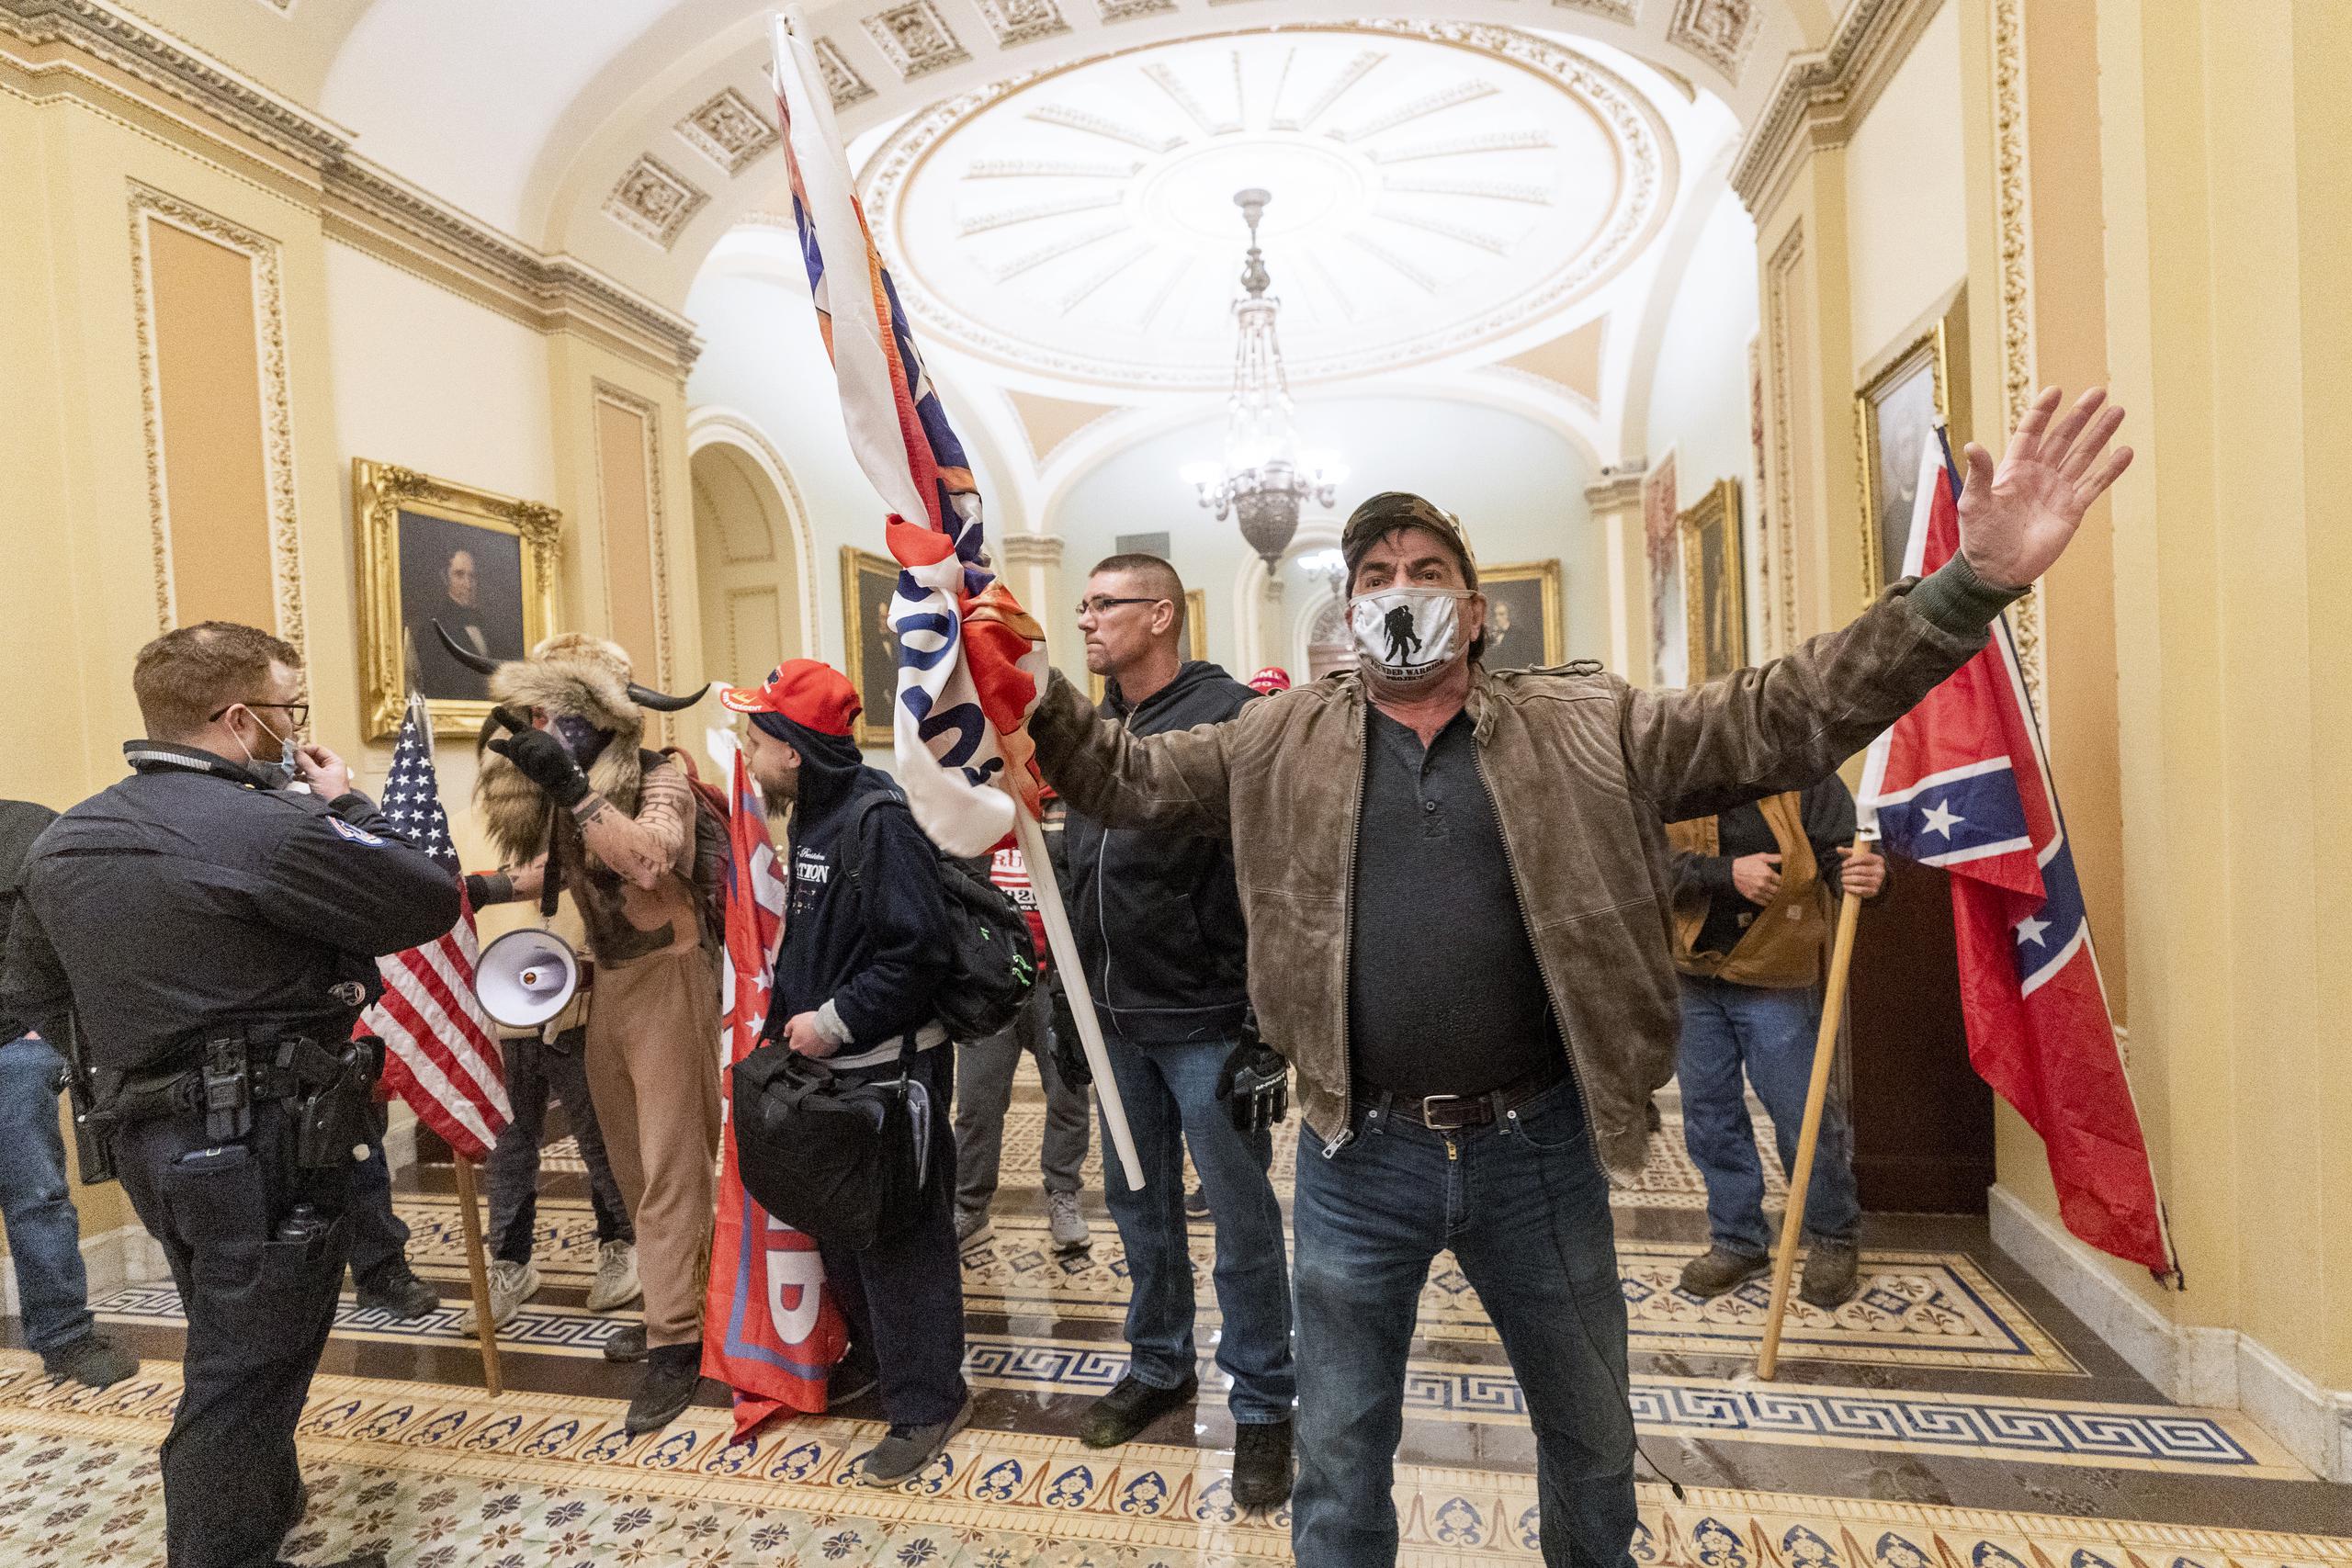 
Los partidarios del presidente Donald Trump se enfrentan a agentes de la policía en las instalaciones del Capitolio en Washington.